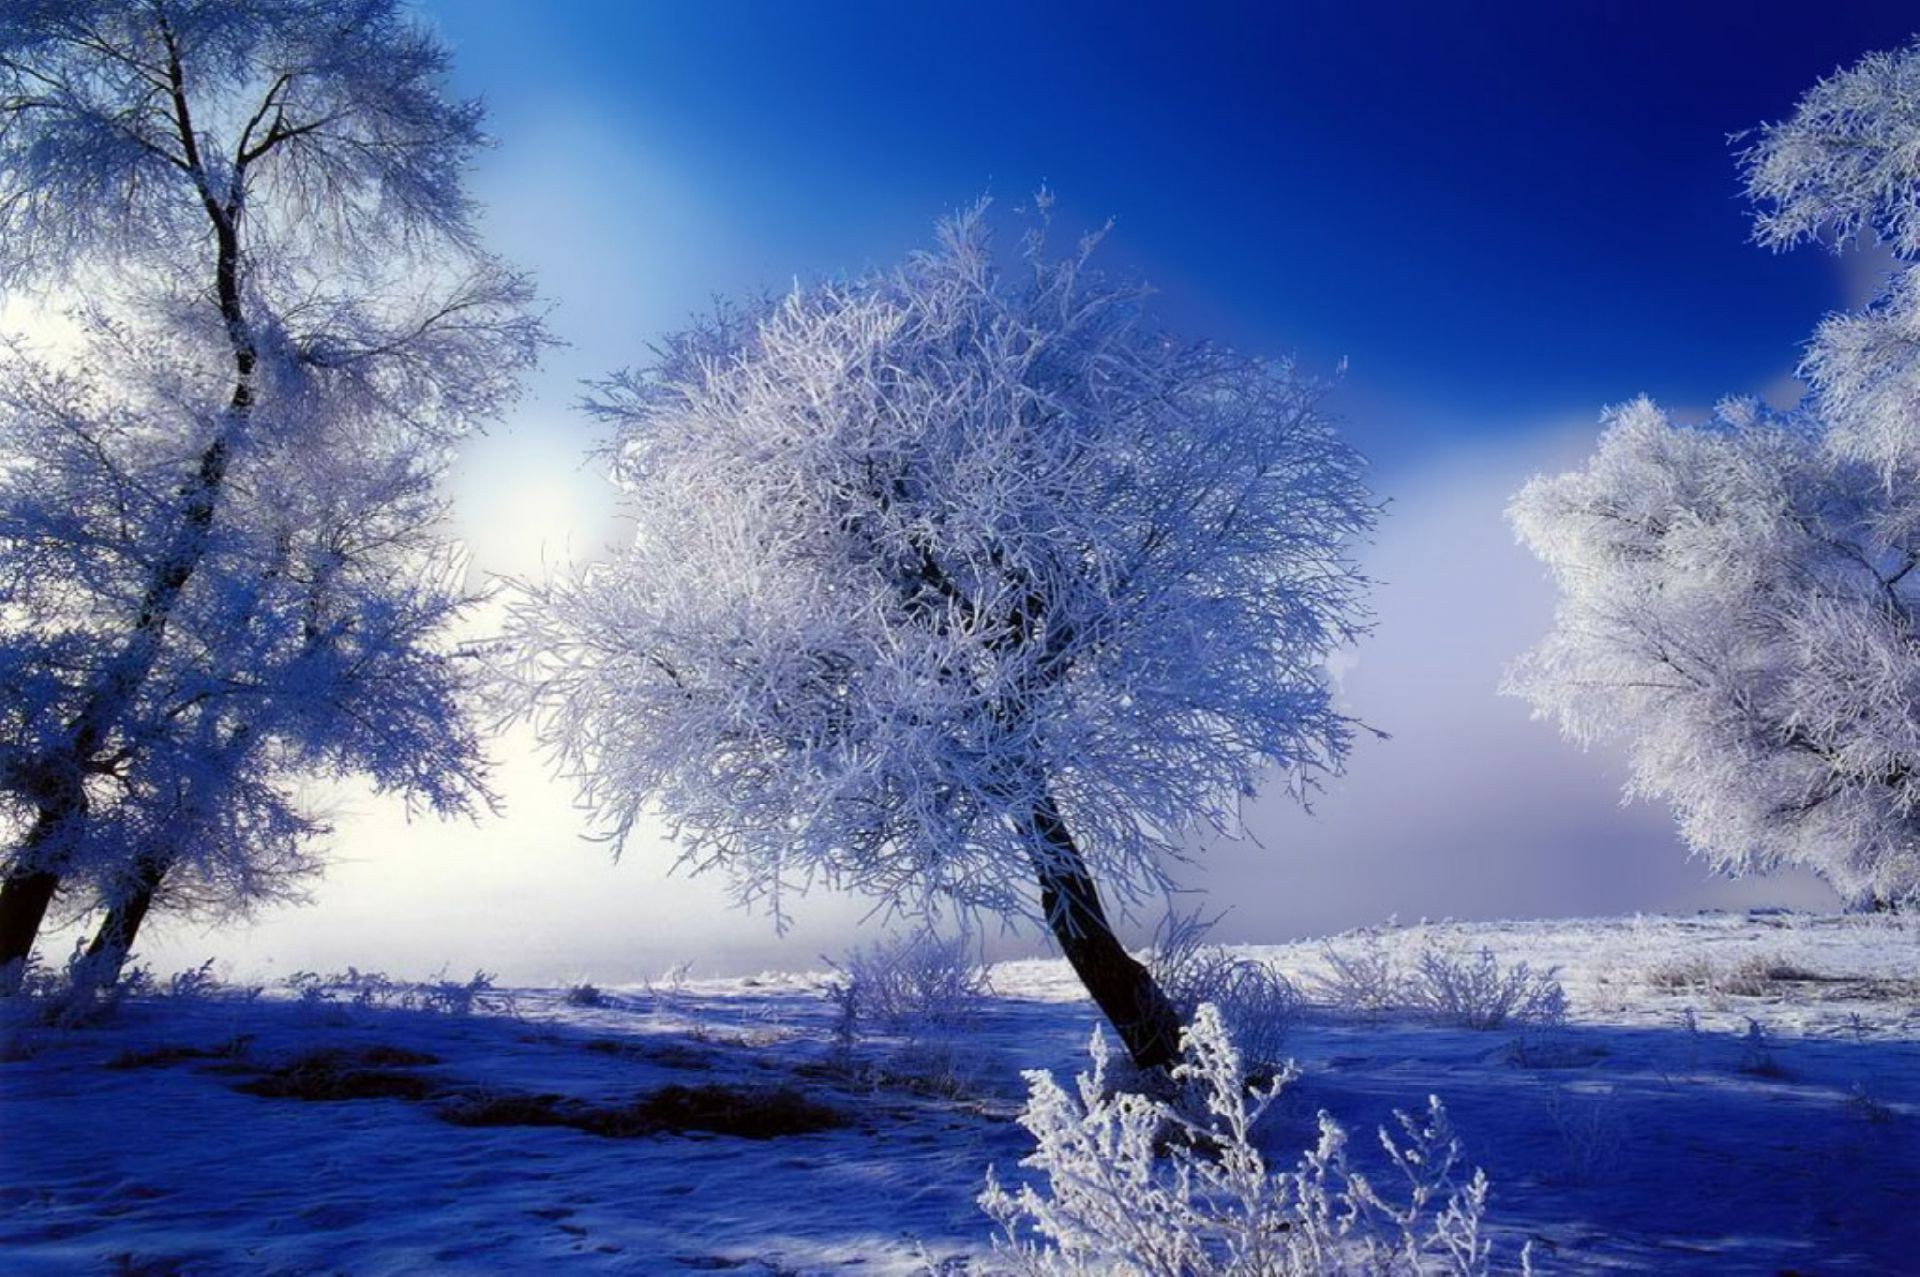 зима снег мороз холодная погода дерево пейзаж природа лед замороженные хорошую погоду небо сезон рассвет морозный живописный древесины на открытом воздухе туман